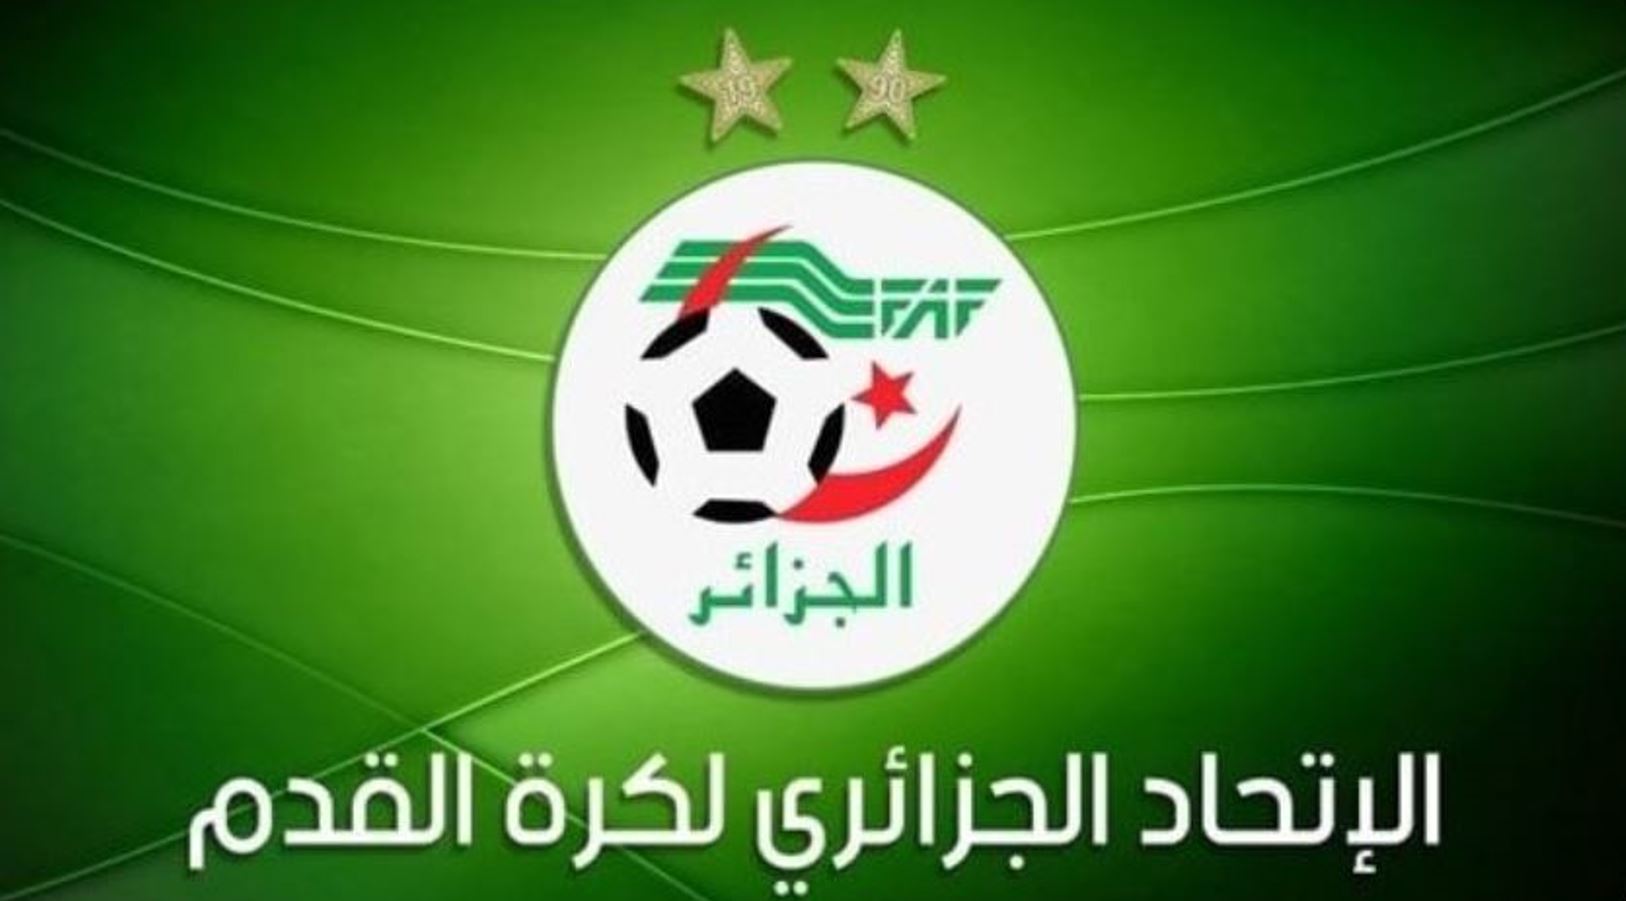 الجزائر تسحب ترشحها لتنظيم كأس افريقيا لكرة القدم في نسختي 2025 و2027